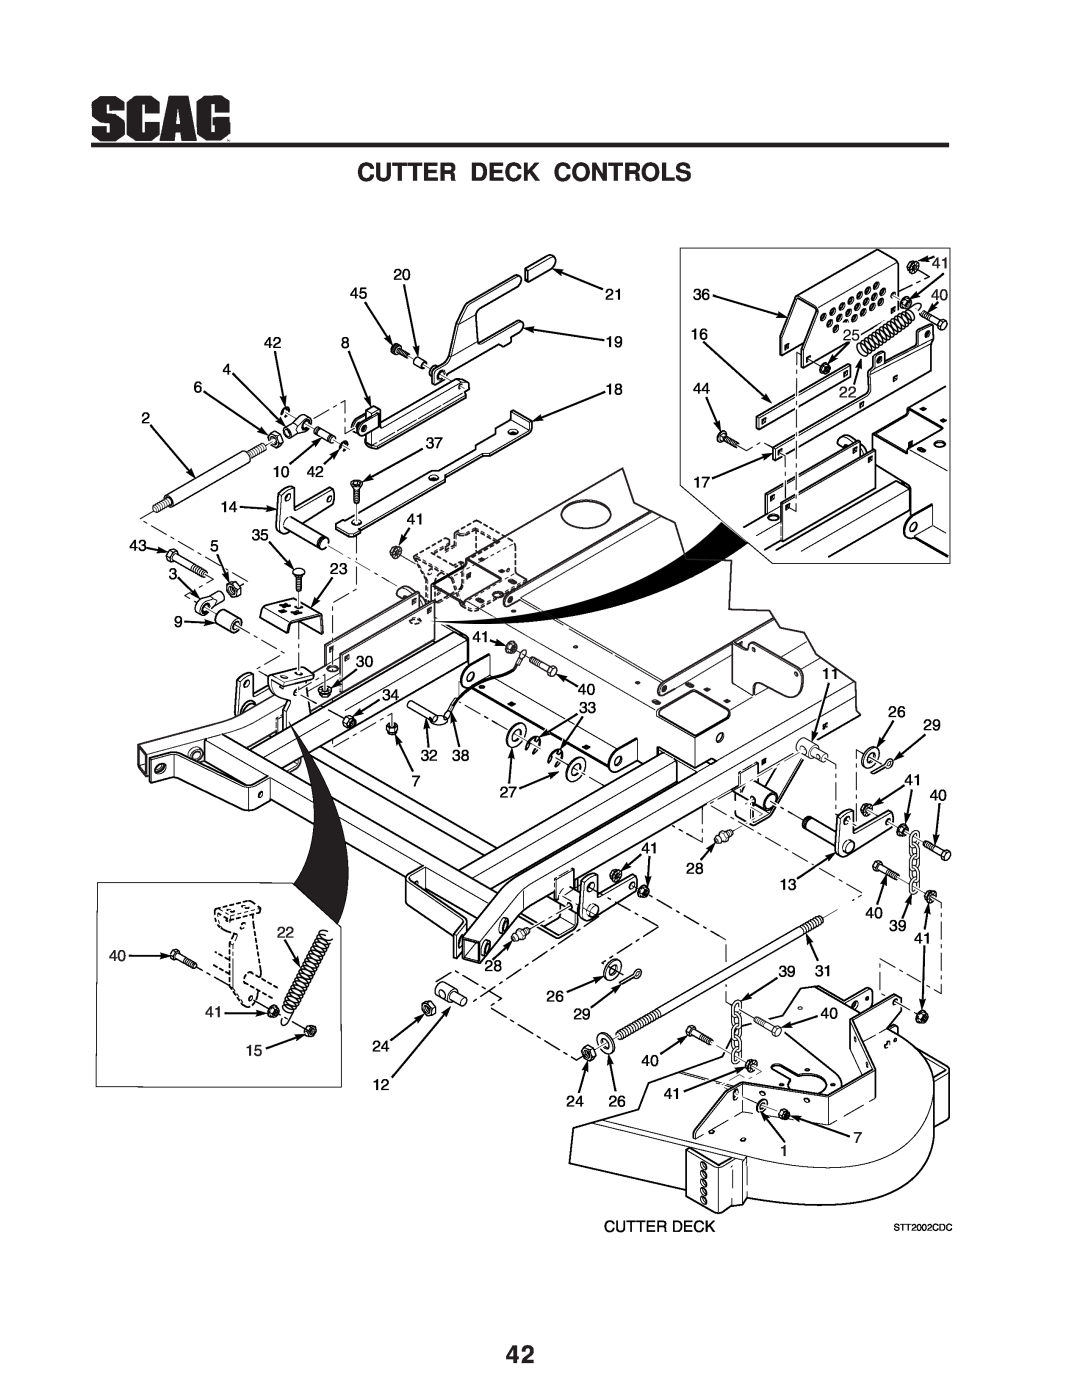 Scag Power Equipment STT-31BSD manual Cutter Deck Controls, STT2002CDC 